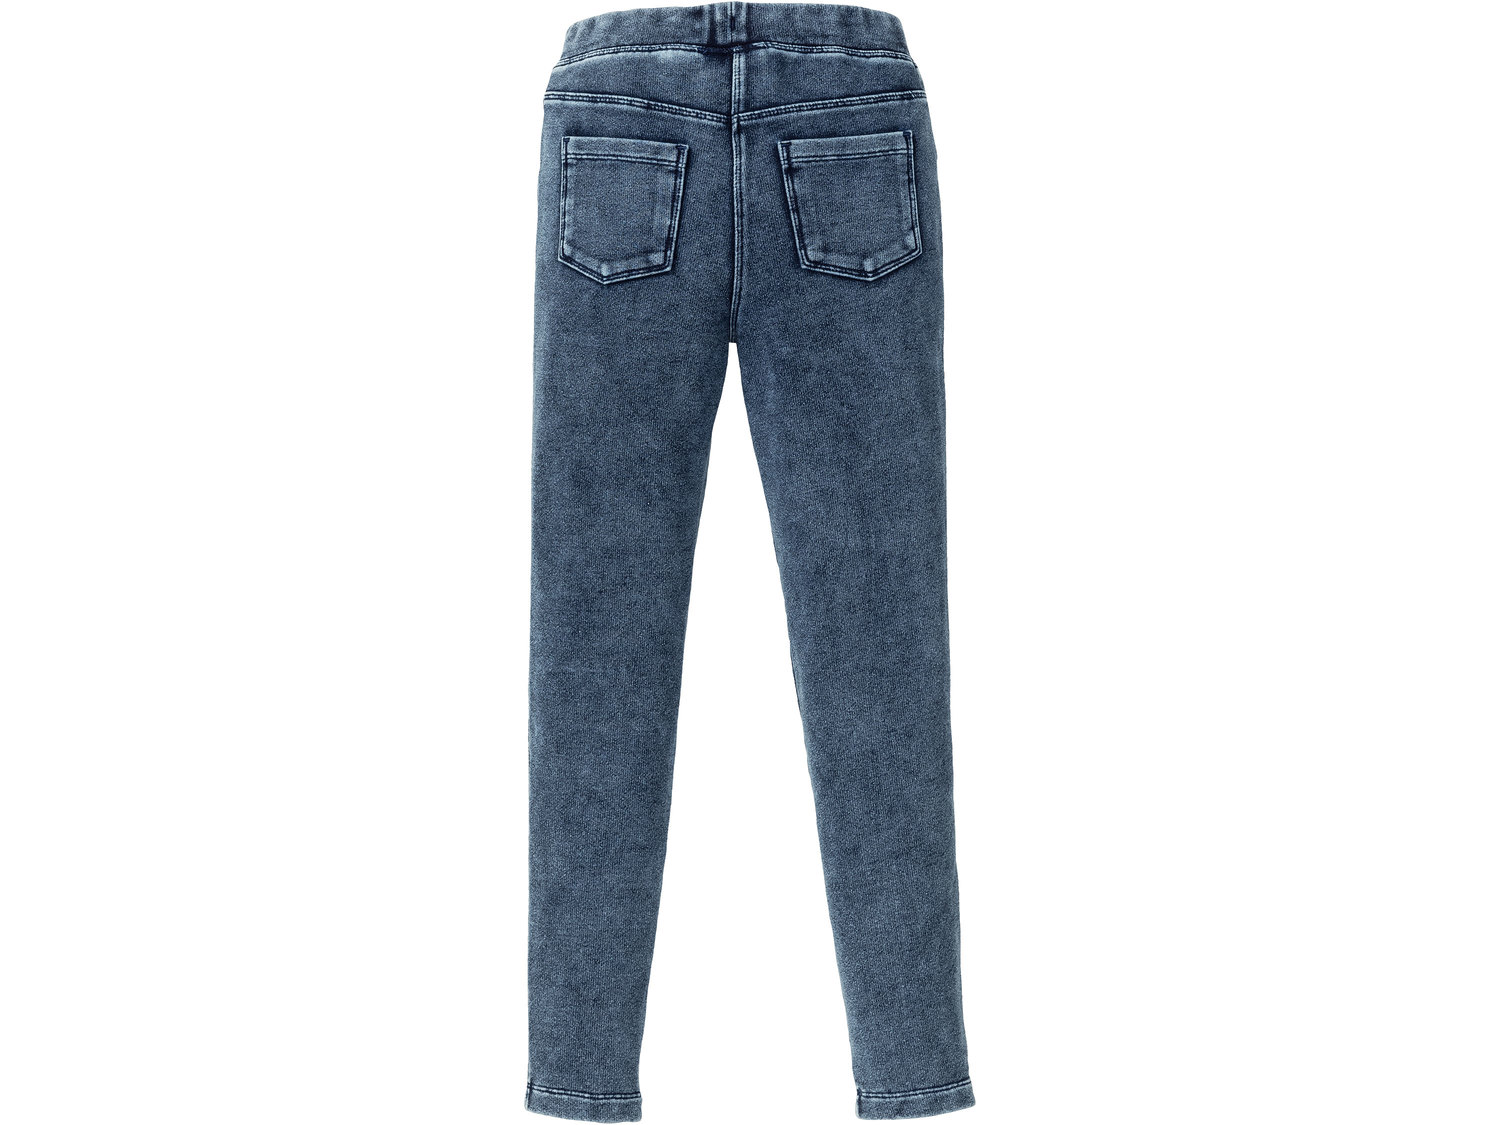 Jegginsy dziewczęce Pepperts, cena 24,99 PLN 
- wygląd jeans&oacute;w, wygoda ...